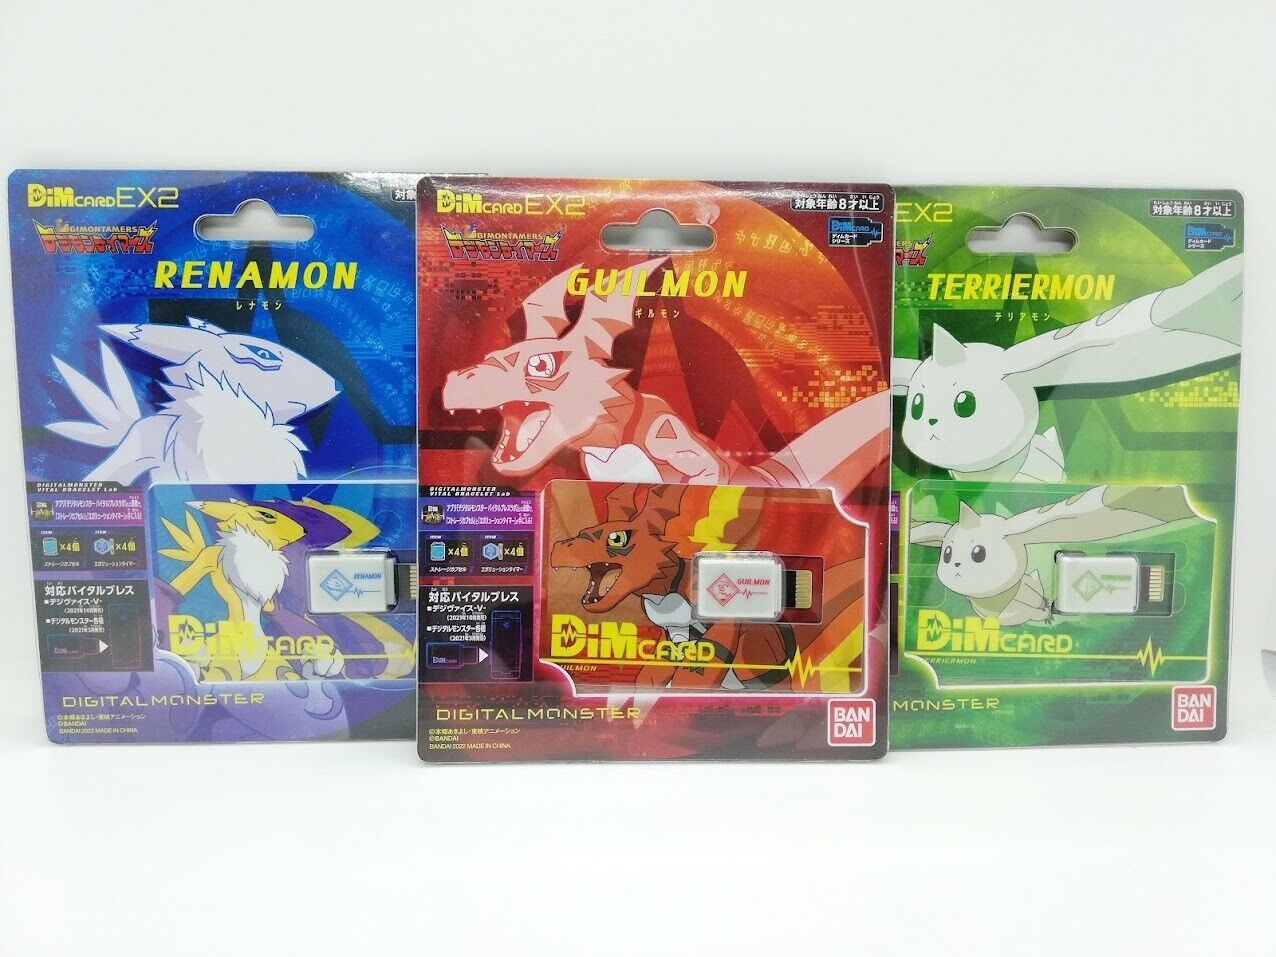 Digimon Tamers Dim Card EX2 Digital Monster Vital Bracelet Set of 3 Bandai